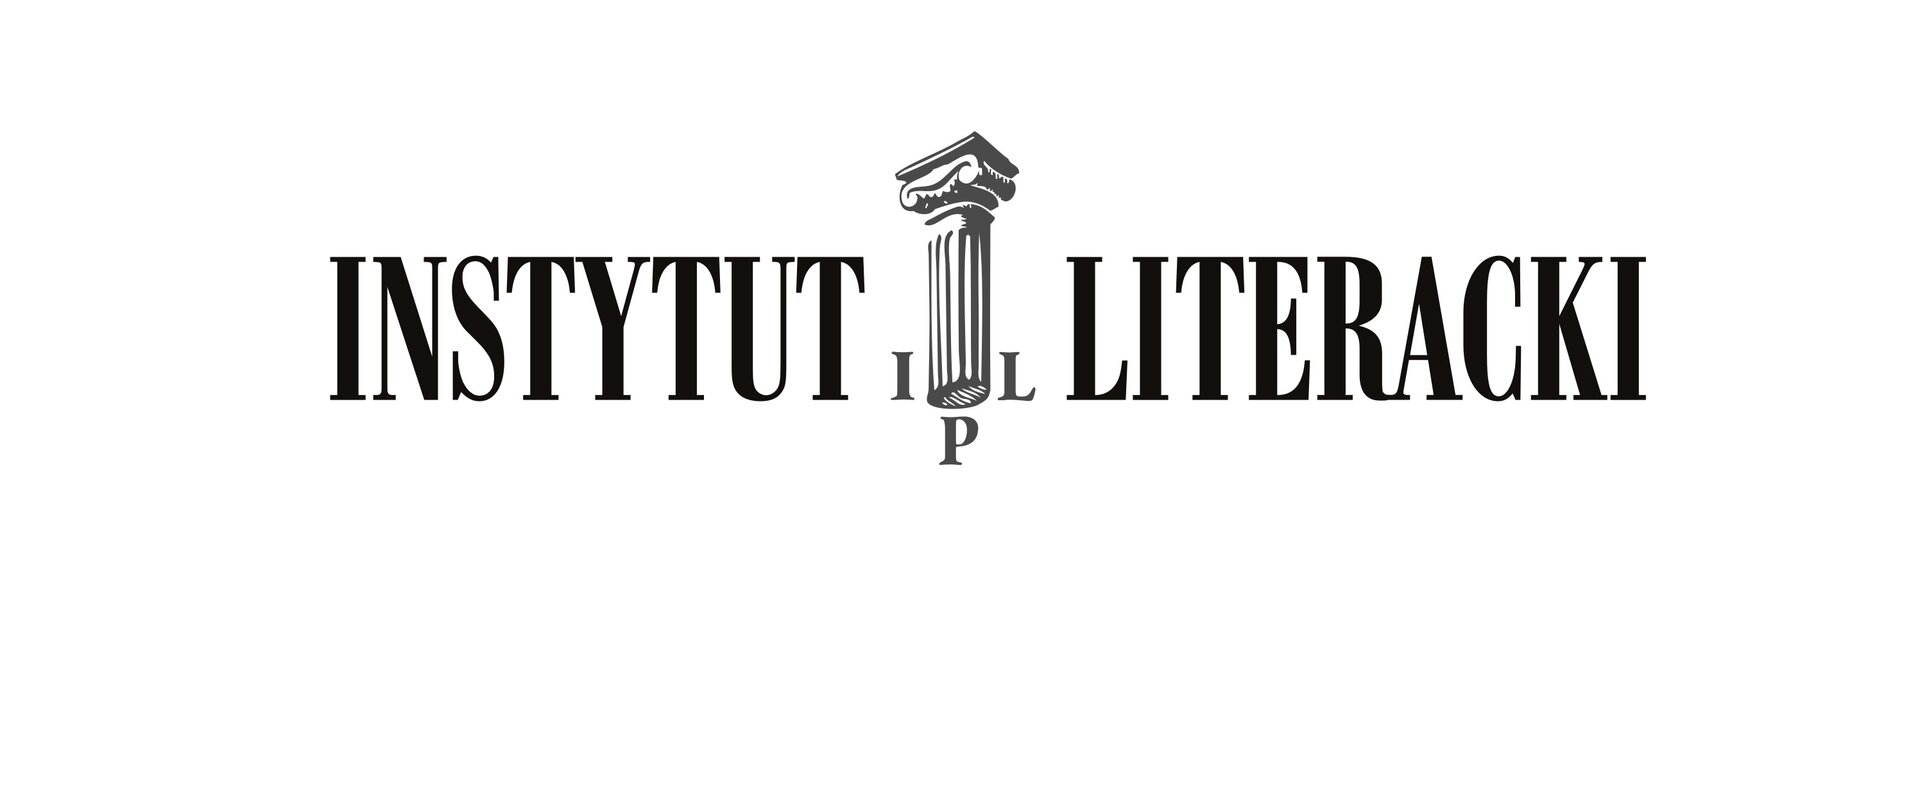 Logo z napisem Instytut Literacki. Pomiędzy słowami starożytna kolumna otoczona literami IPL.